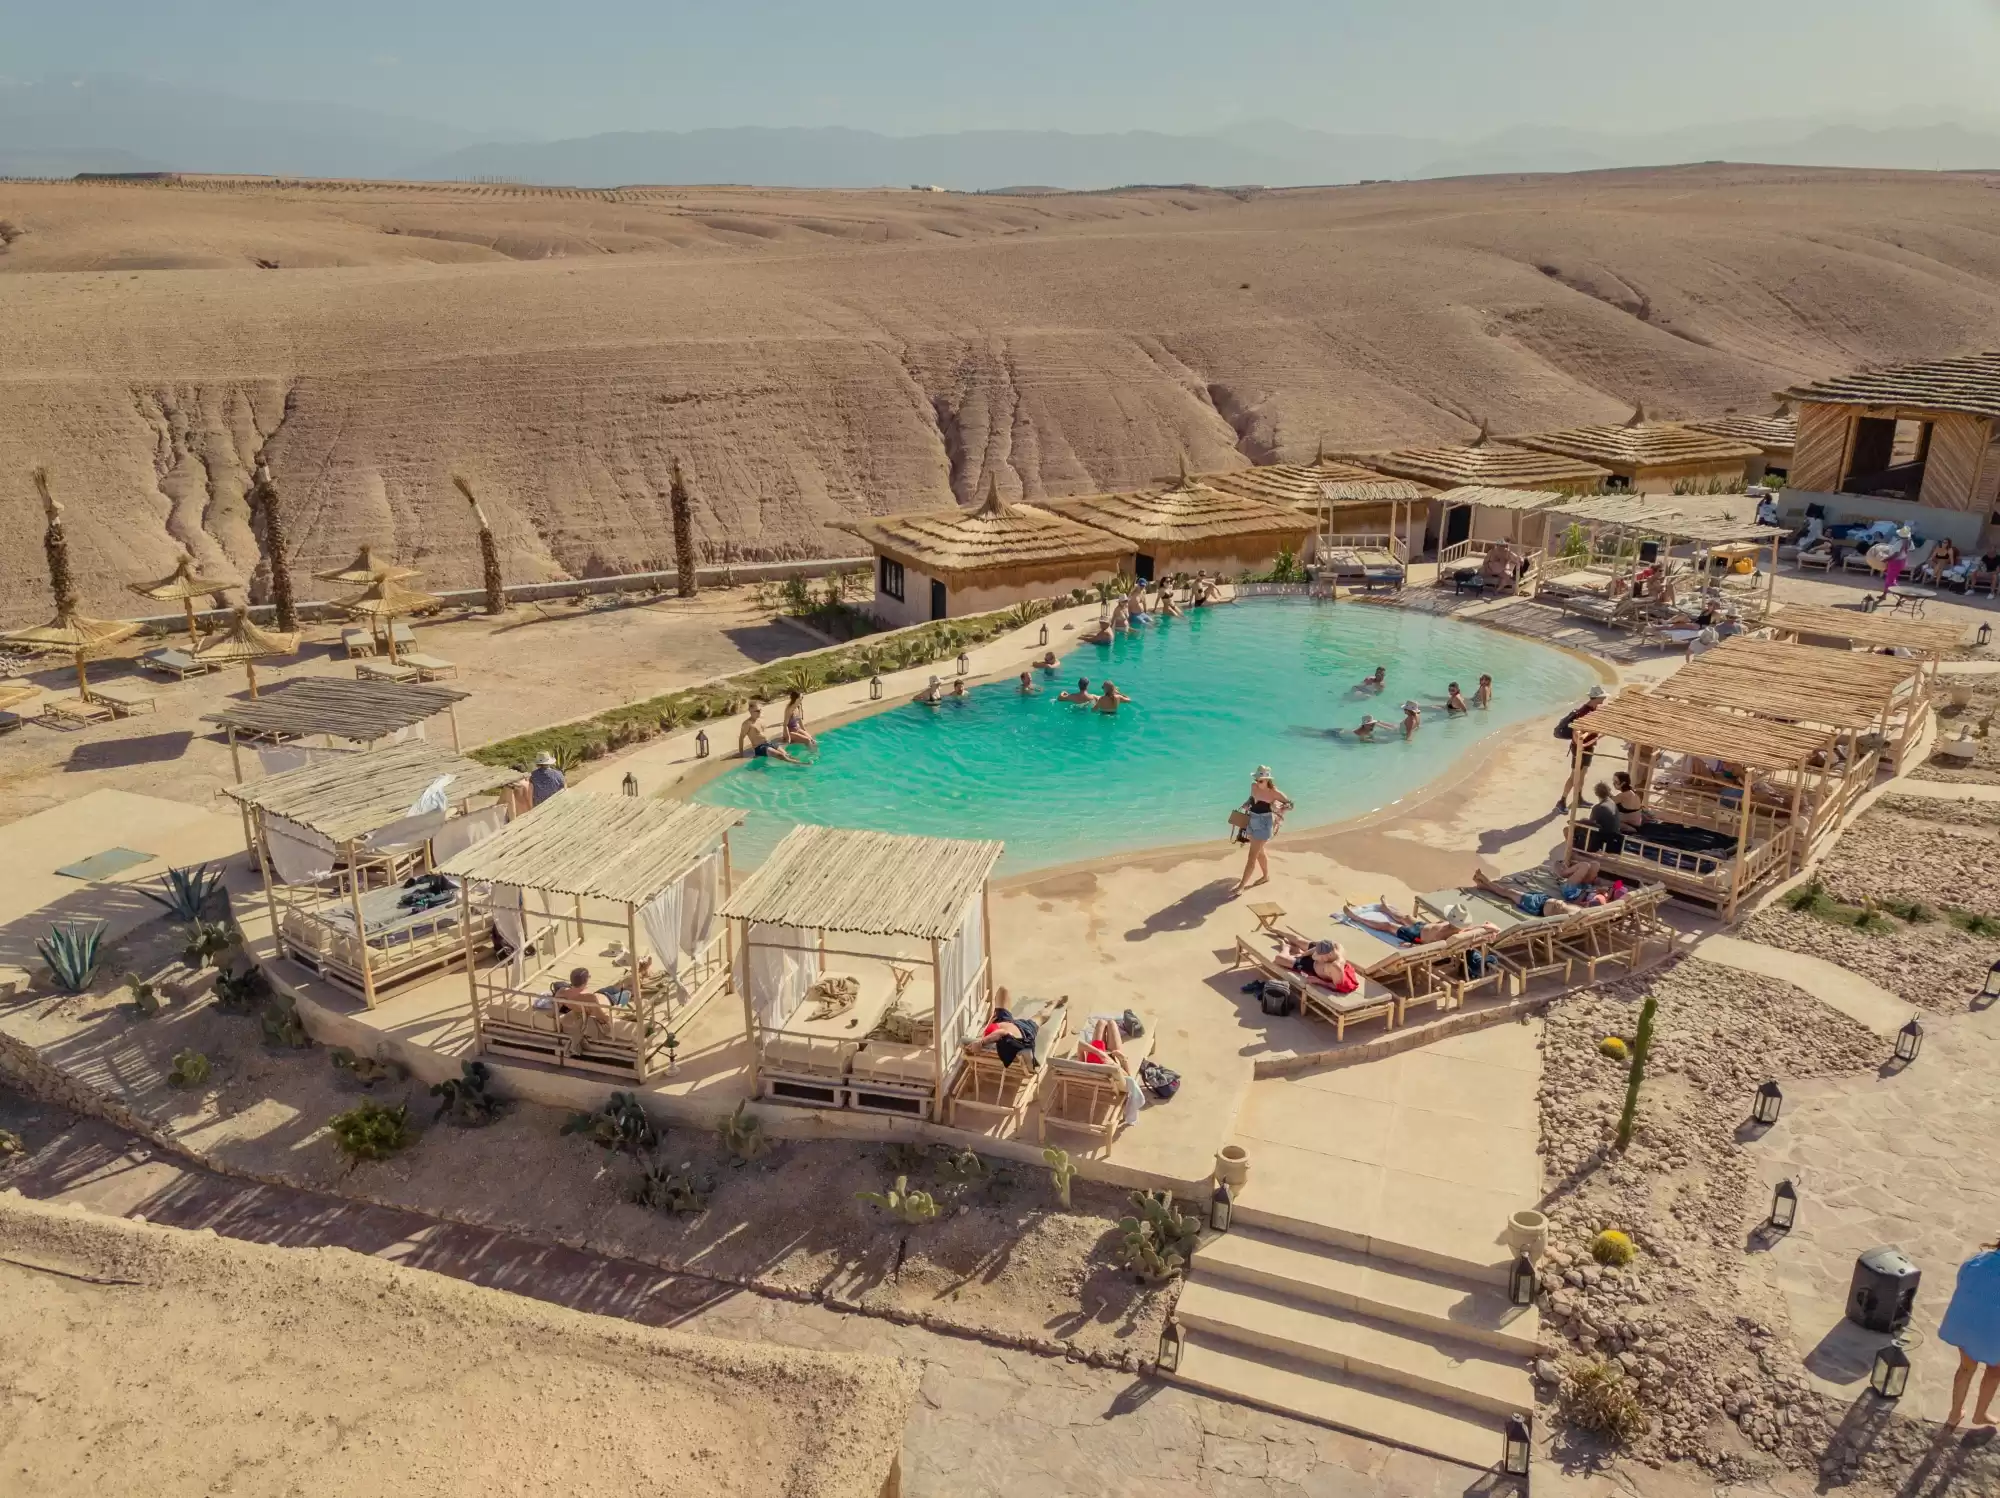  Journée piscine et déjeuner/dîner dans le désert d'Agafay : Une oasis au milieu des dunes